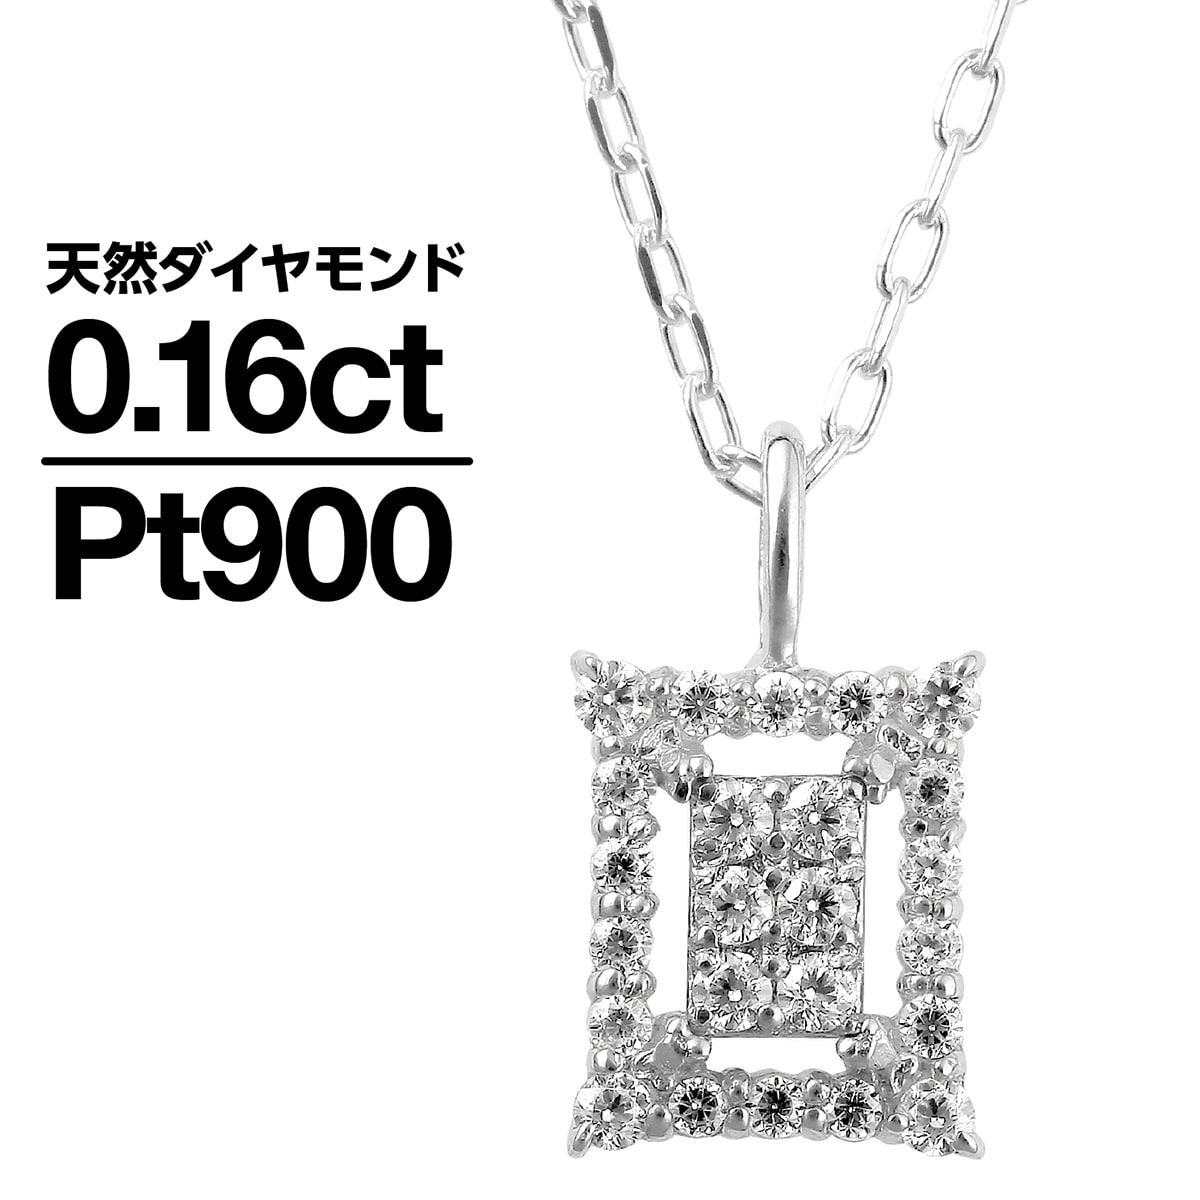 売店 ネックレス ダイヤモンド プラチナ900 天然ダイヤ 品質保証書